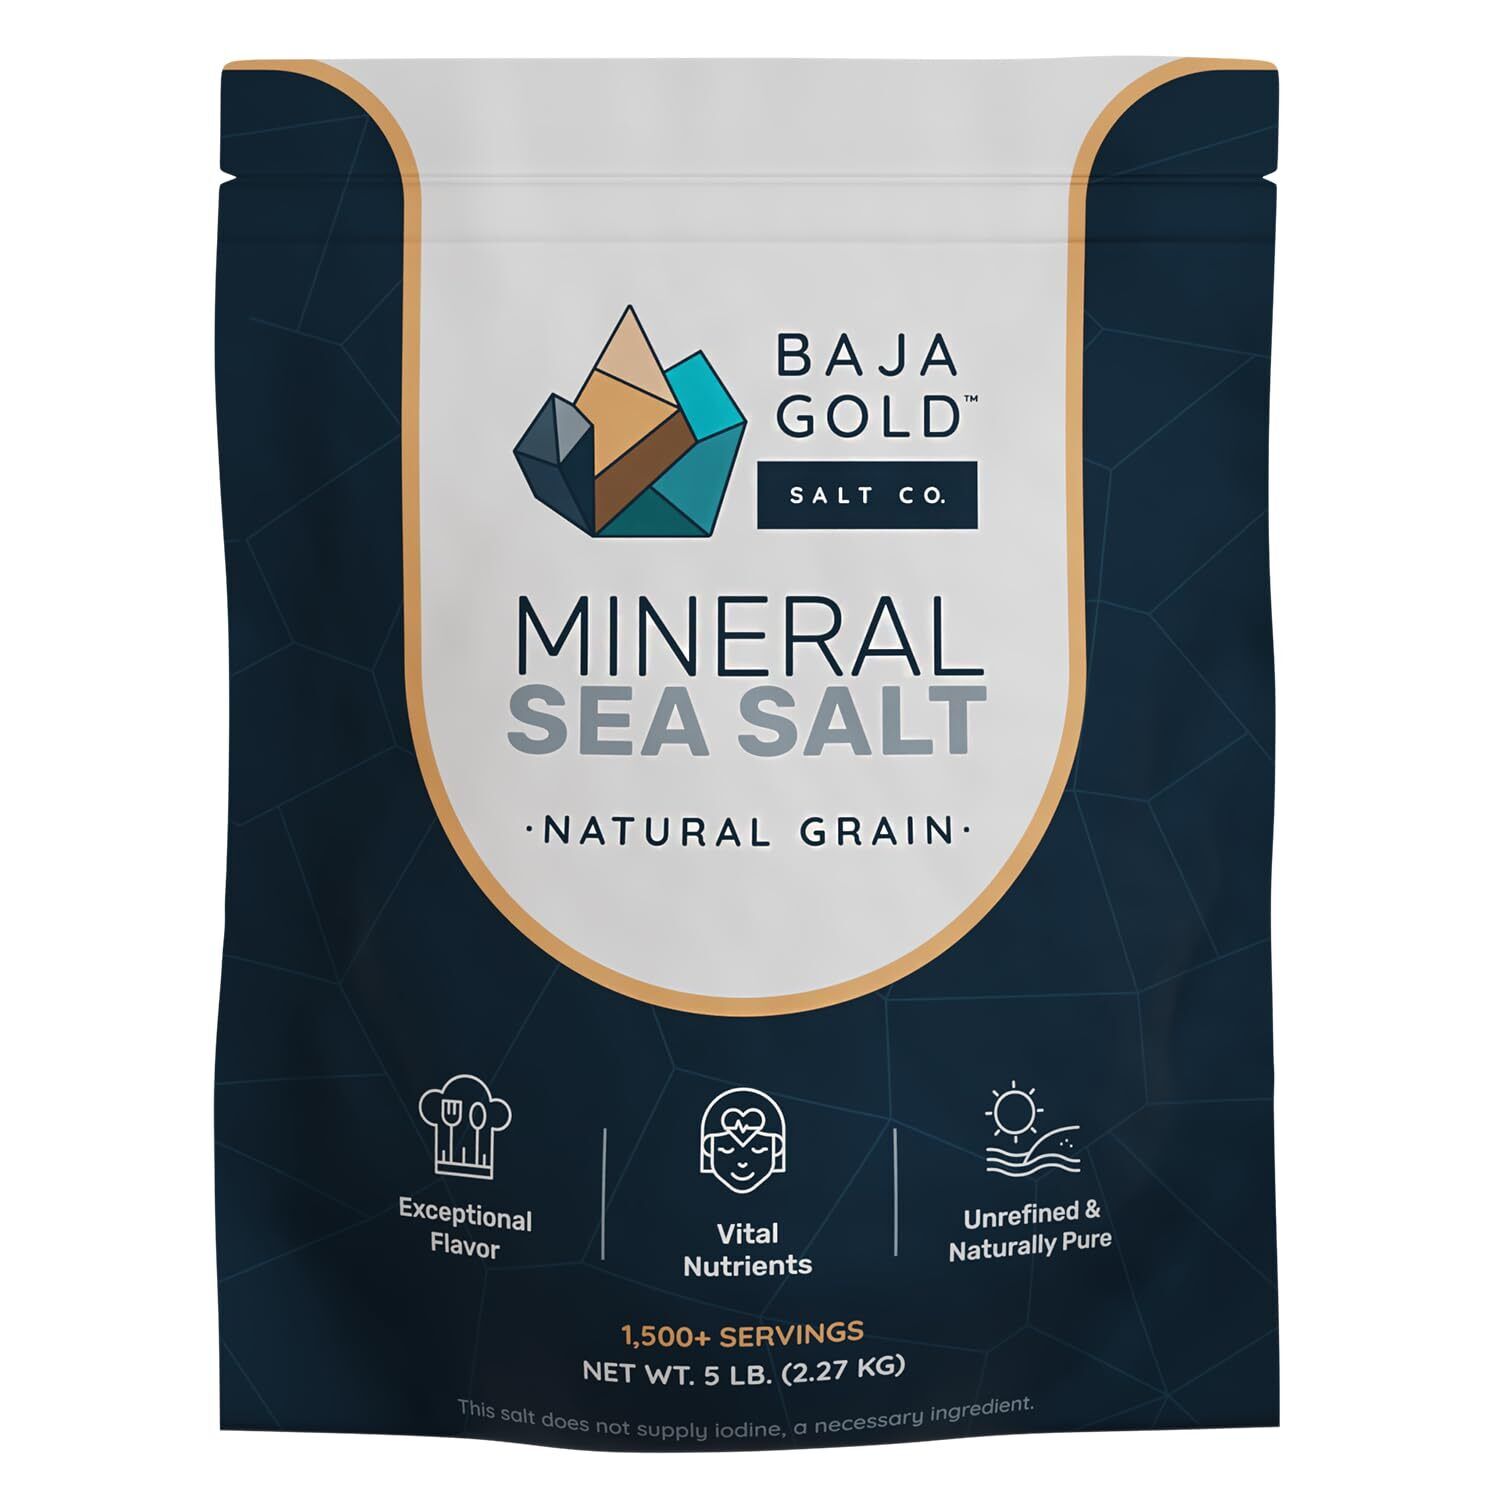 Baja Gold Mineral Sea Salt, Natural Grain Crystals, 5 Lb. Bag